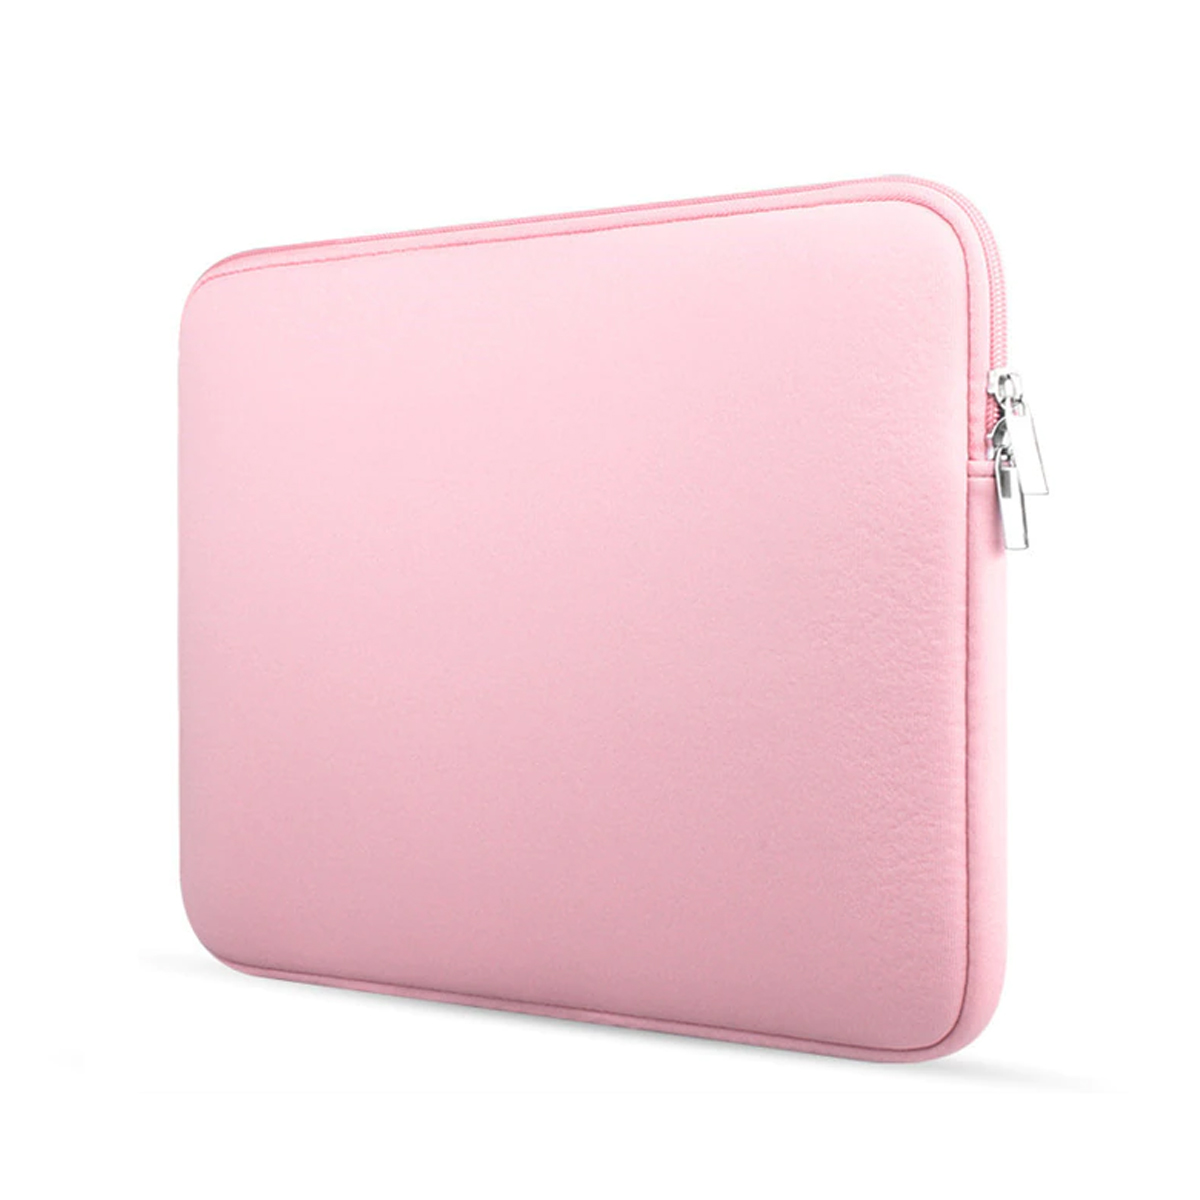 gemeenschap vertalen Het is de bedoeling dat Laptop en Macbook Sleeve - 11.6 inch - Roze | Case2go.nl